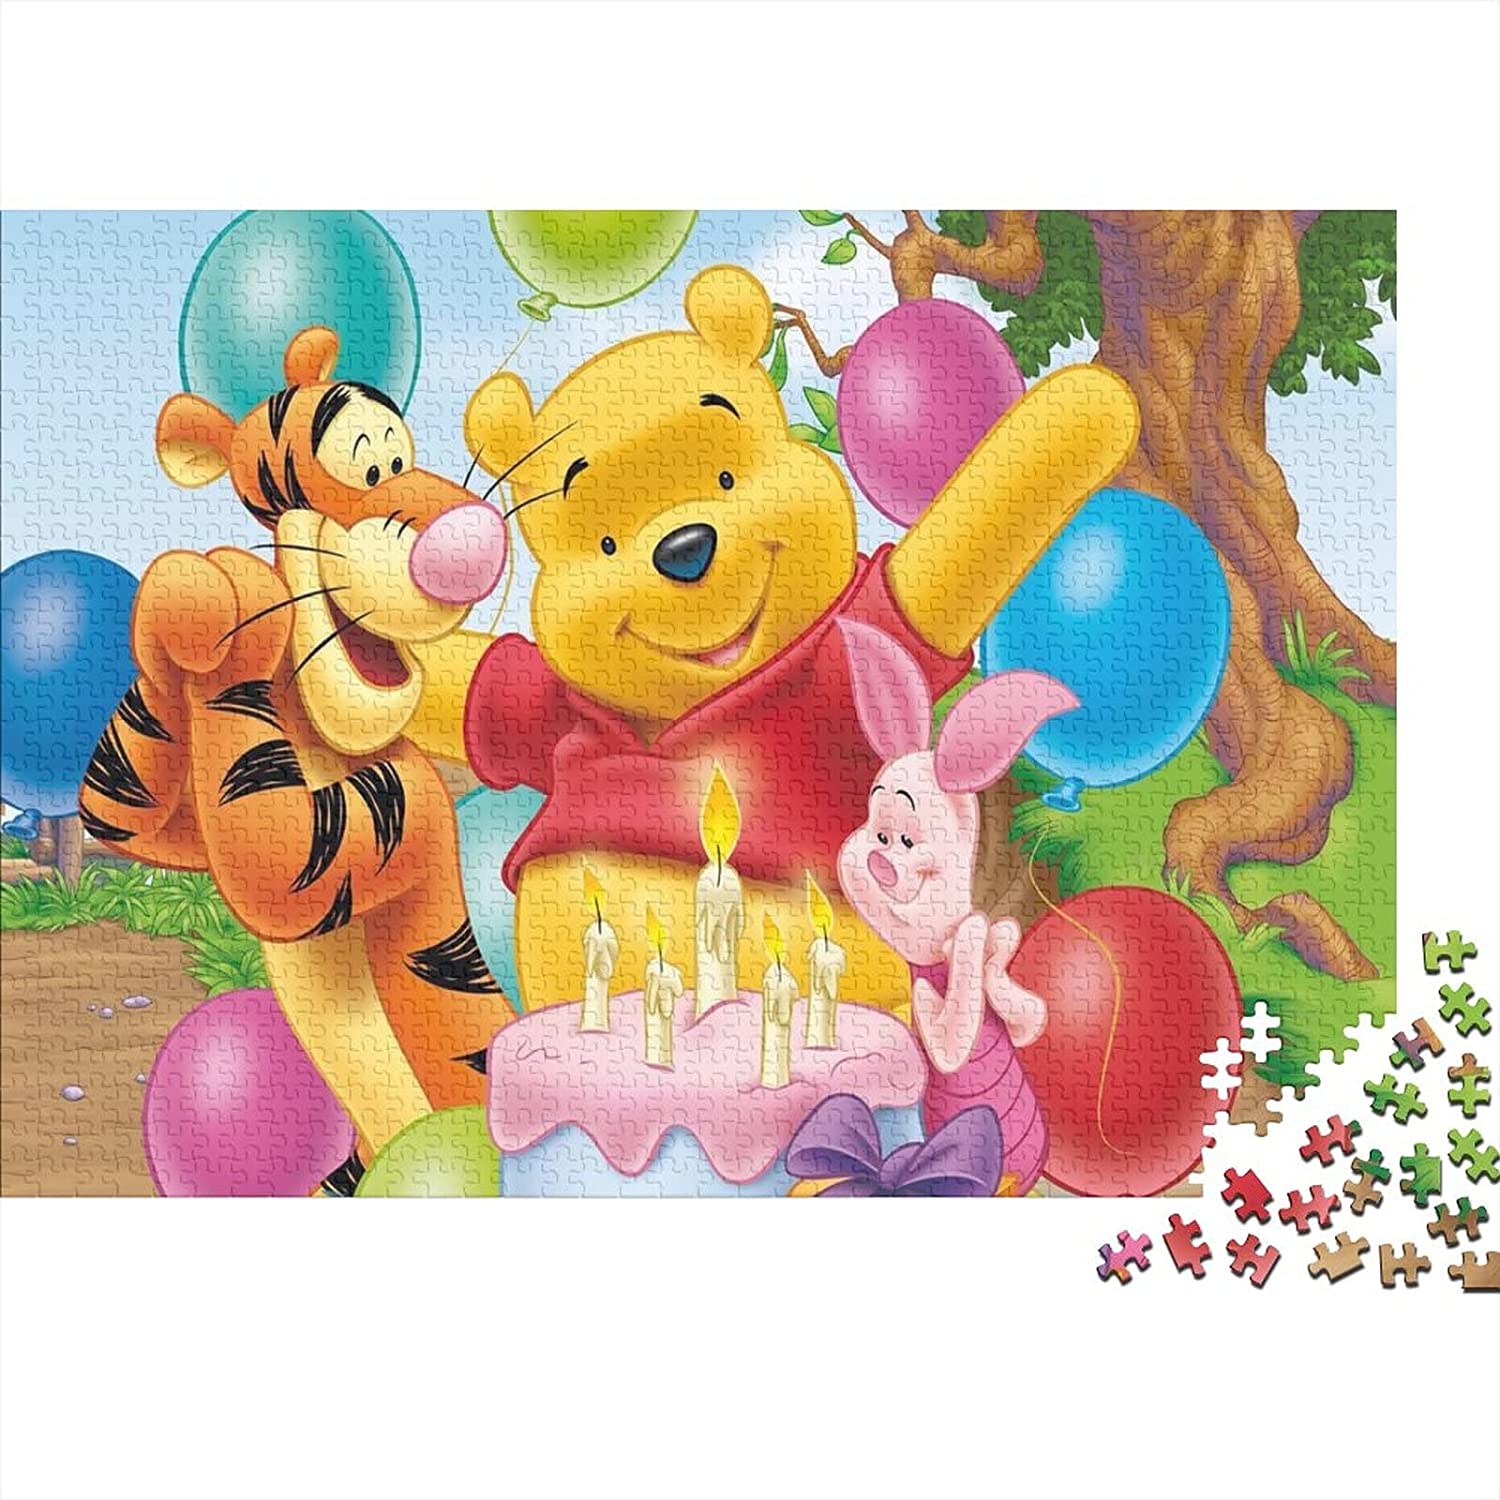 Puzzle de Winnie de Pooh, Piglet y Tigger en cumpleaños